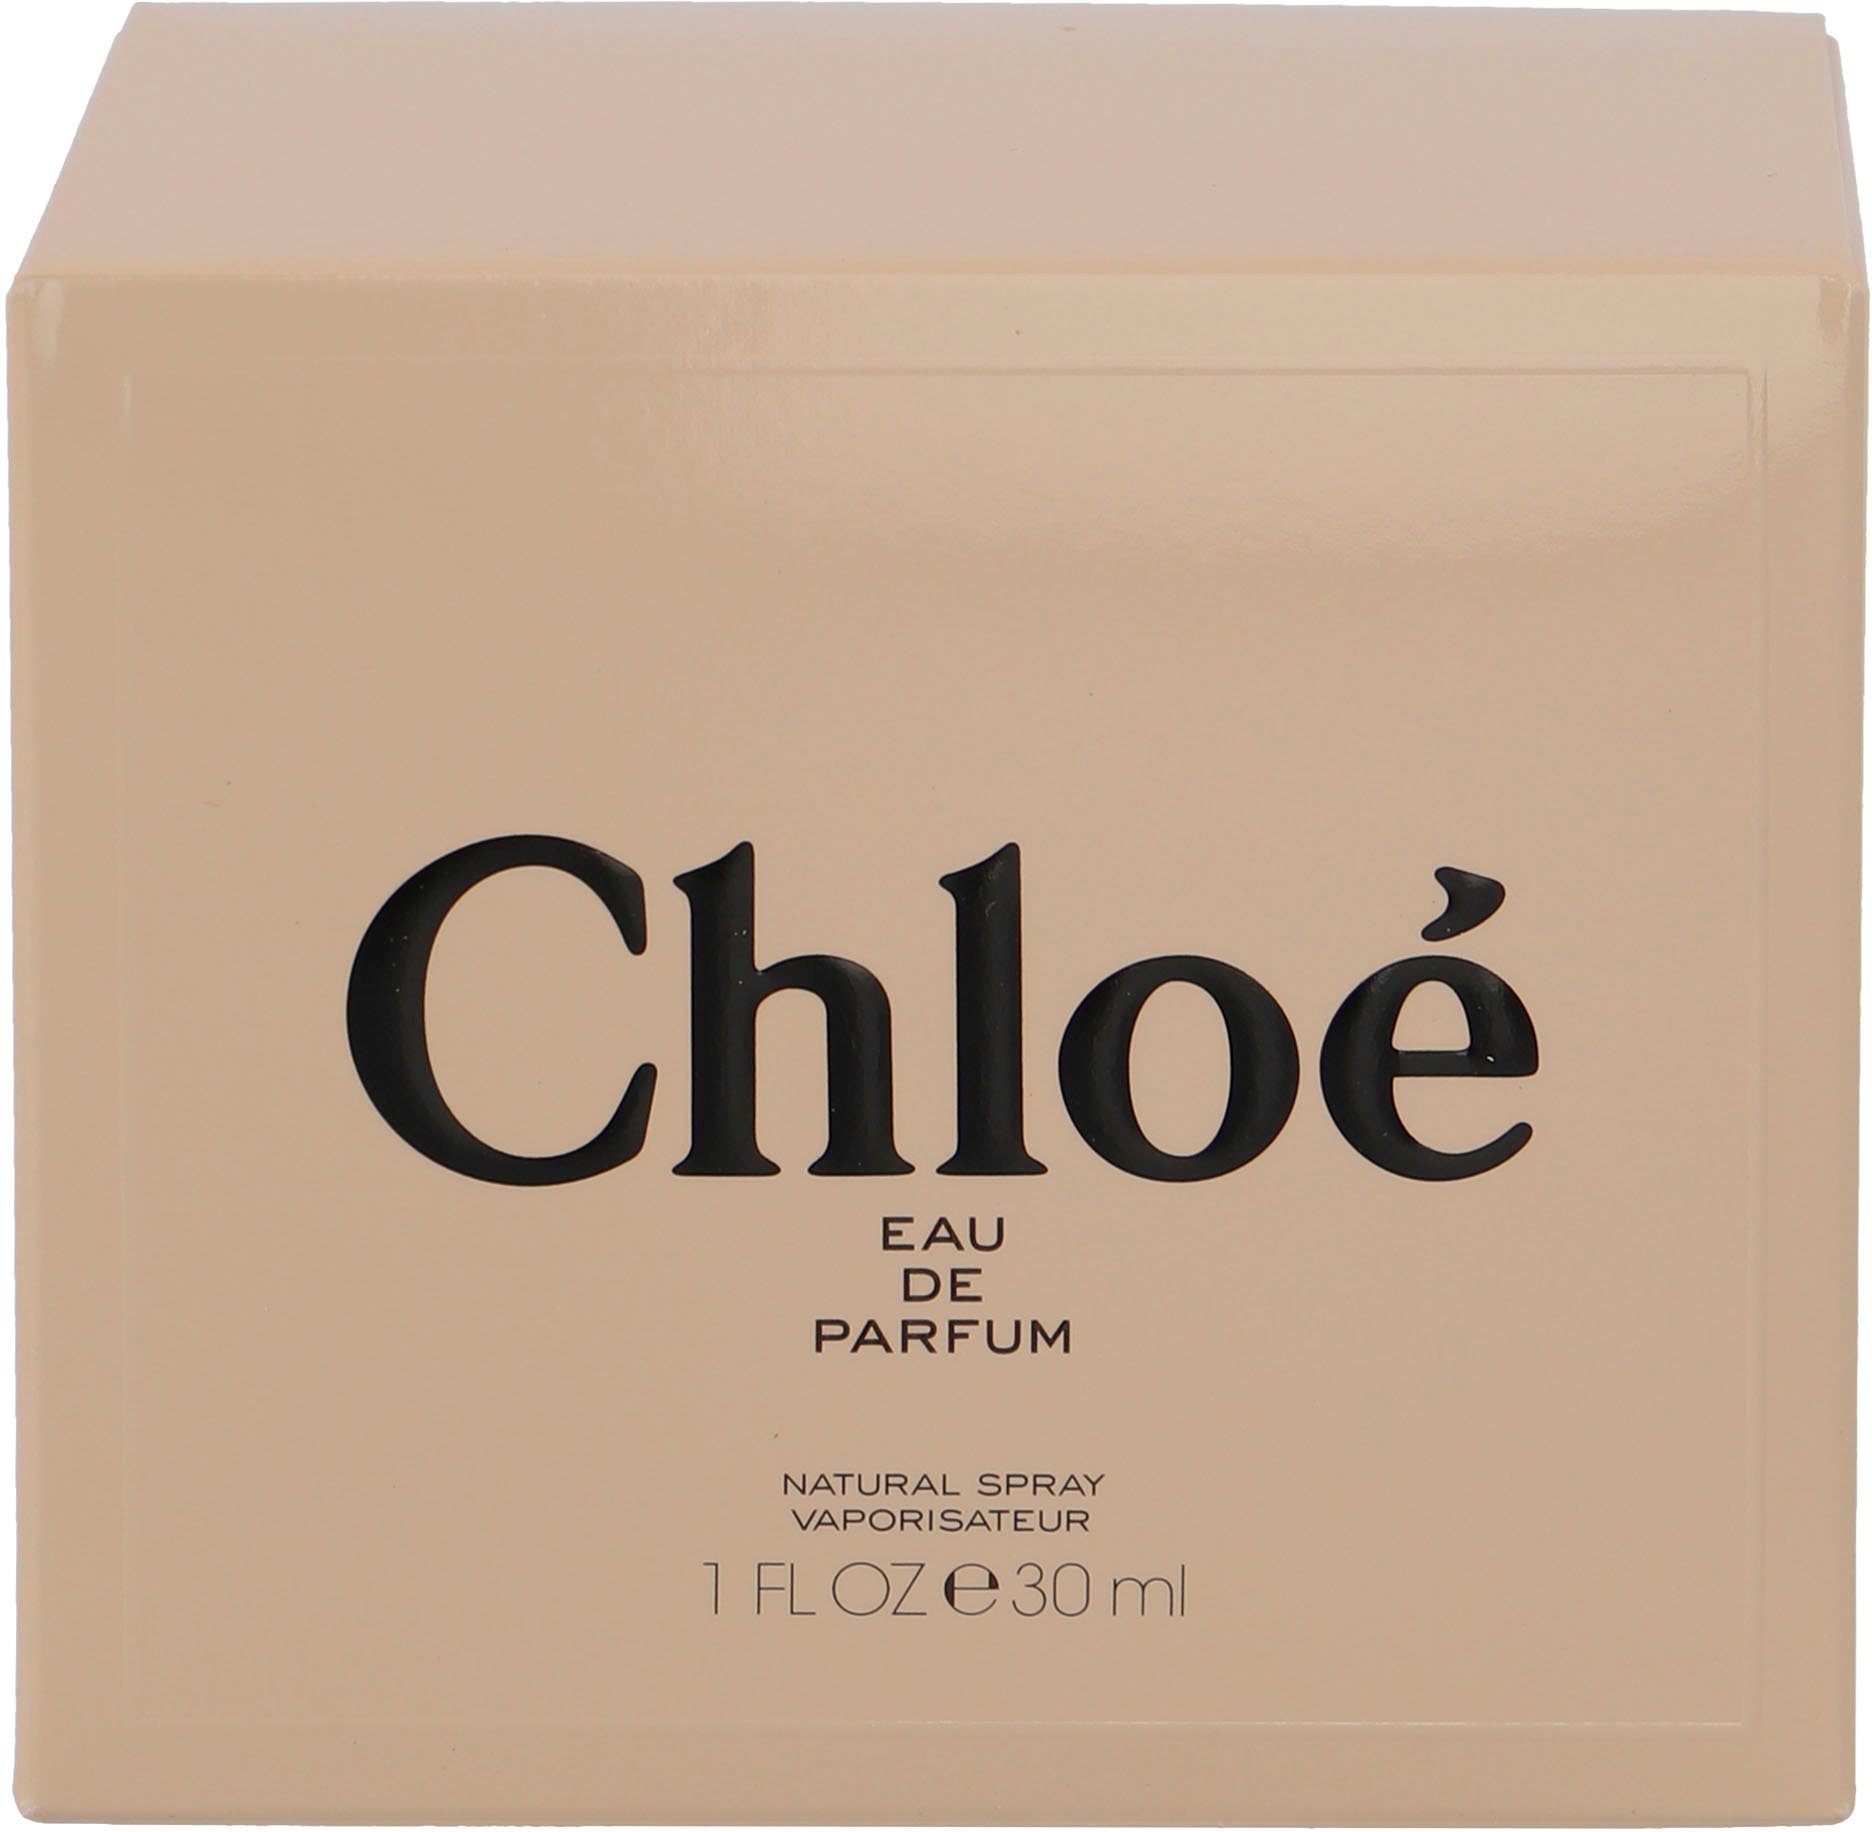 Signature Parfum Chloé Eau de Chloé